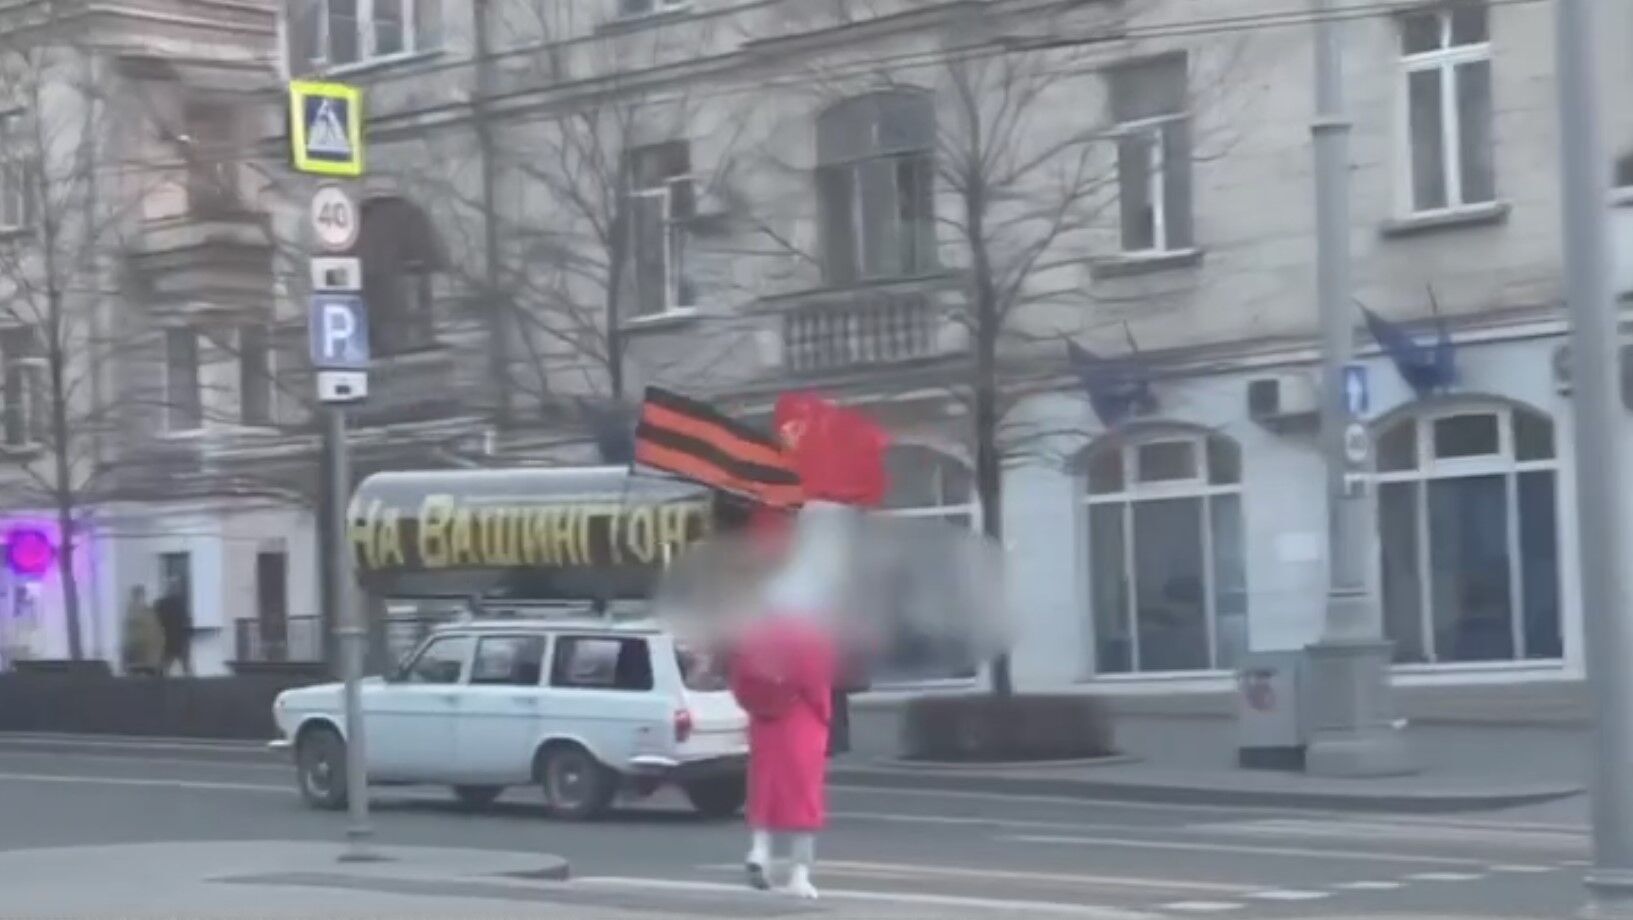 "На Вашингтон!" Окупанти в Севастополі влаштували абсурдну акцію, натякнувши на агресивні плани. Відео